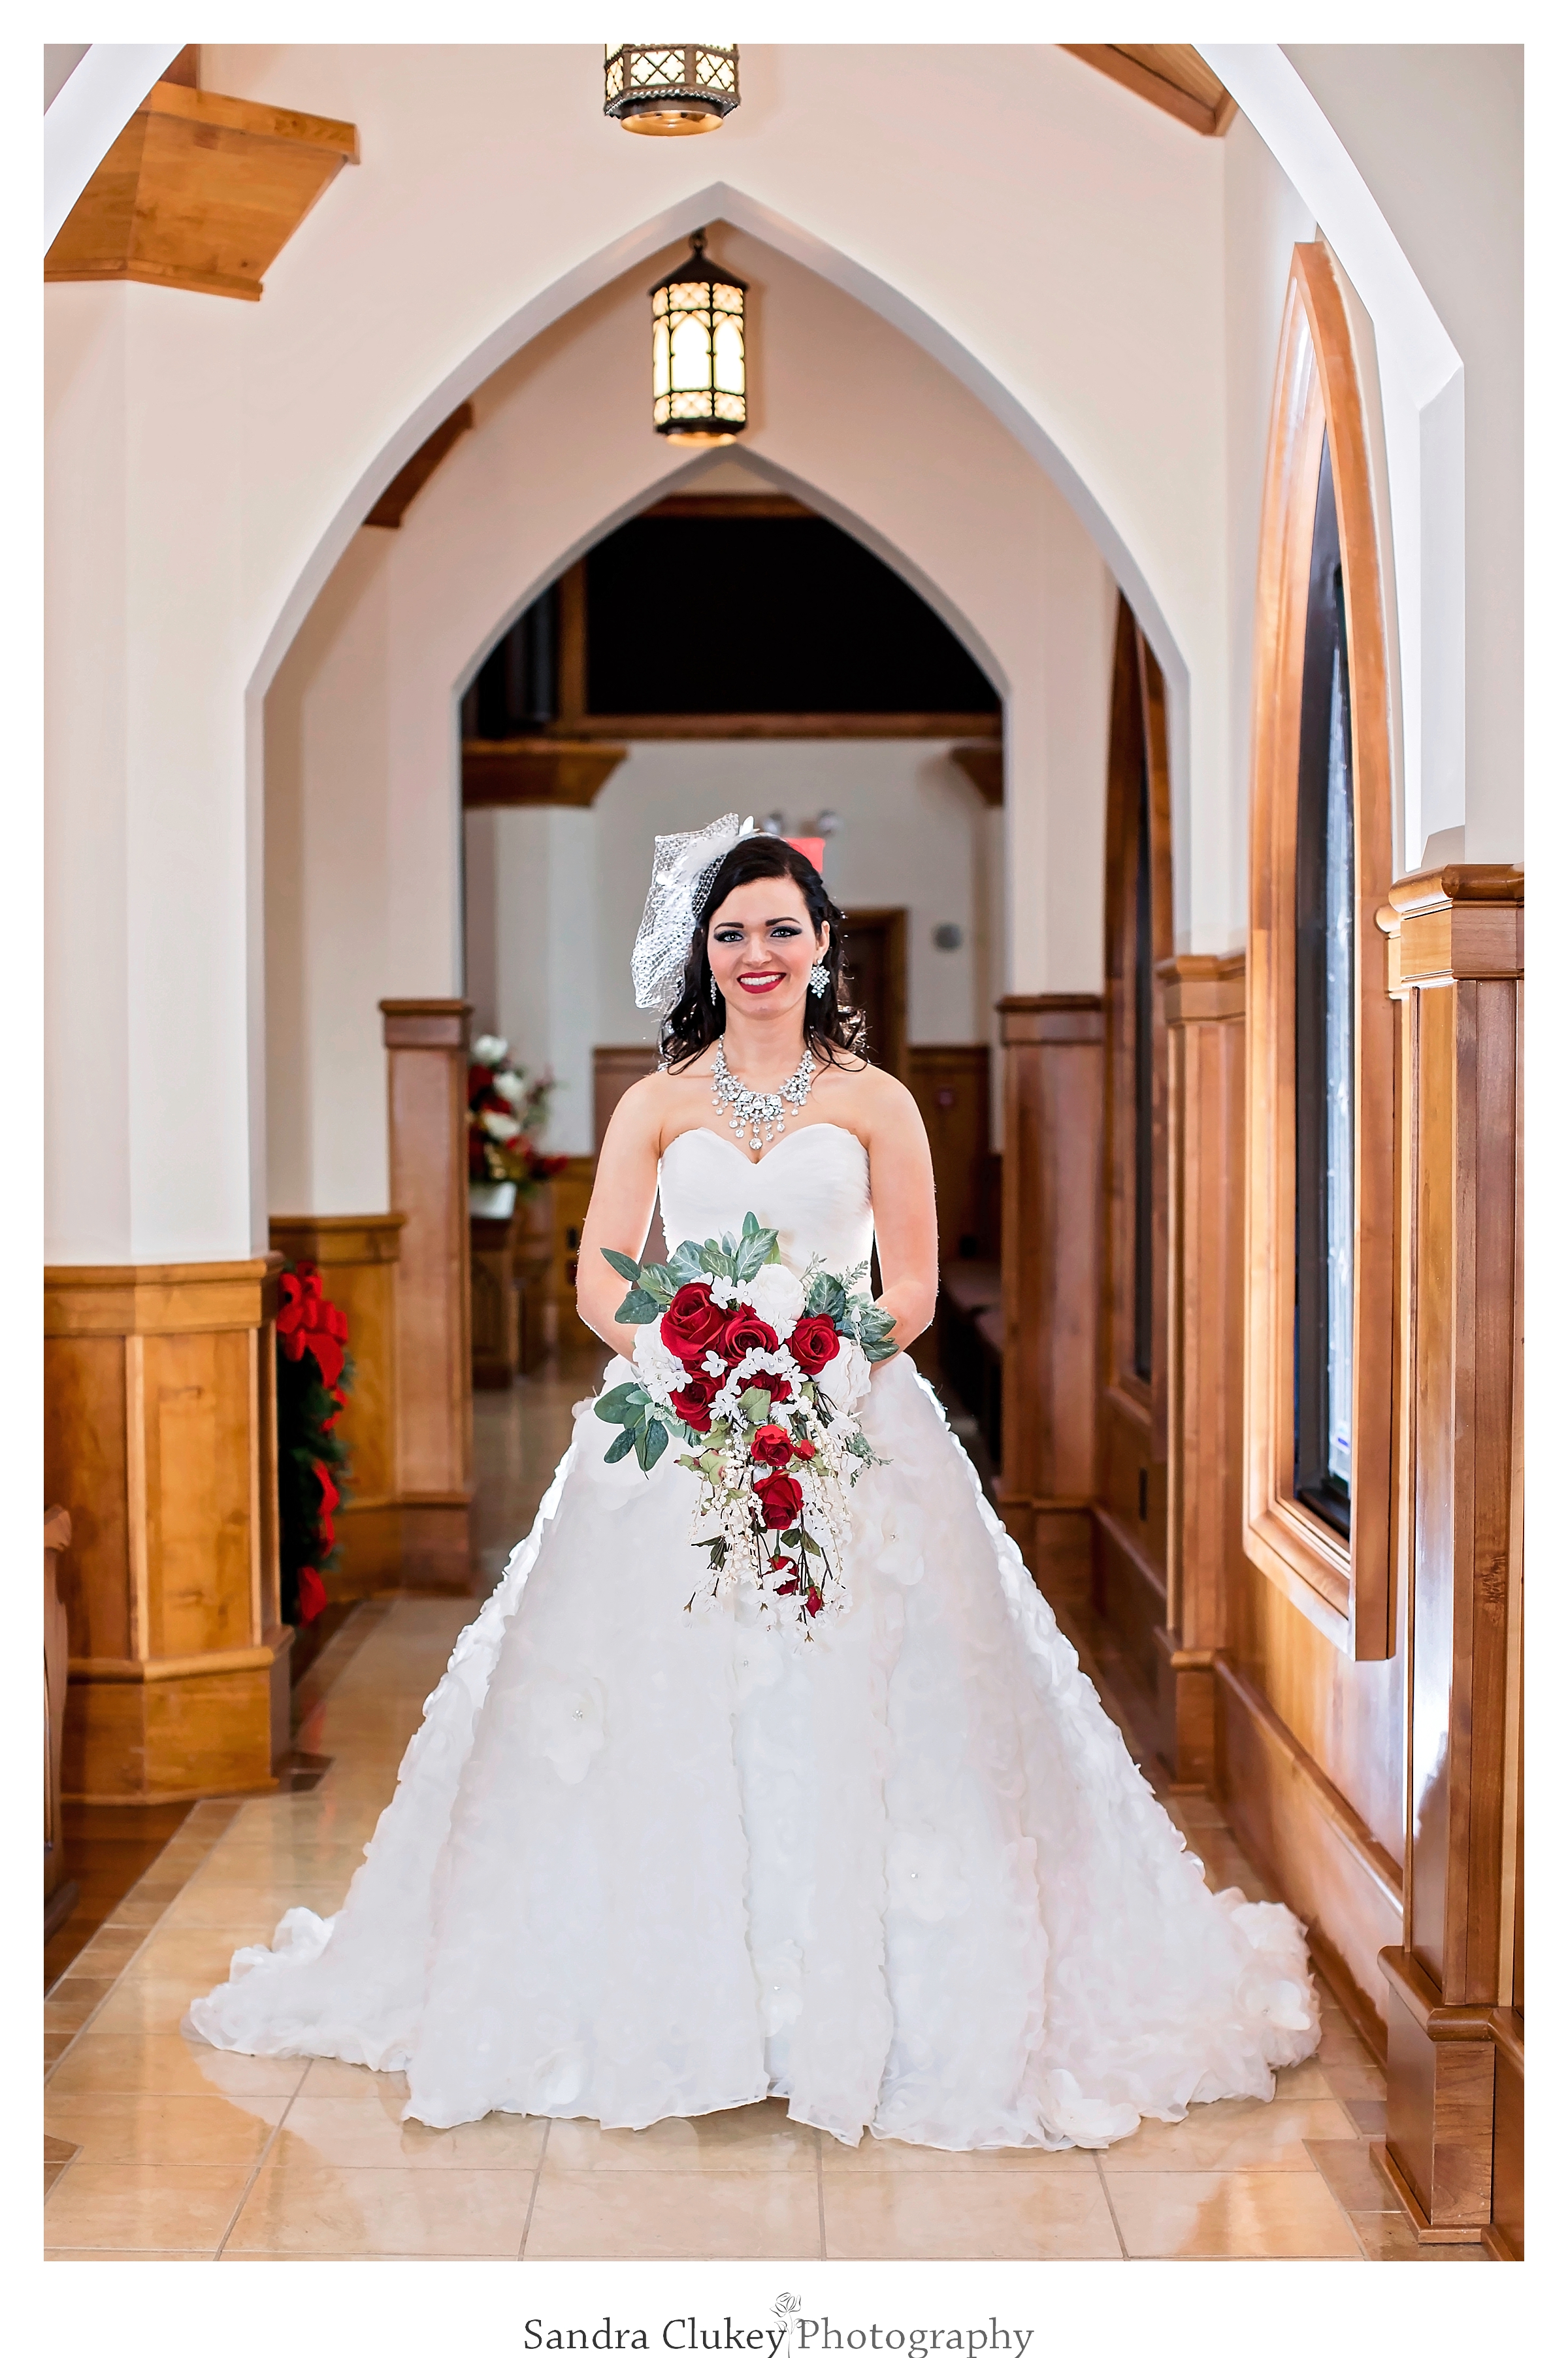 Graceful Bride in Chapel